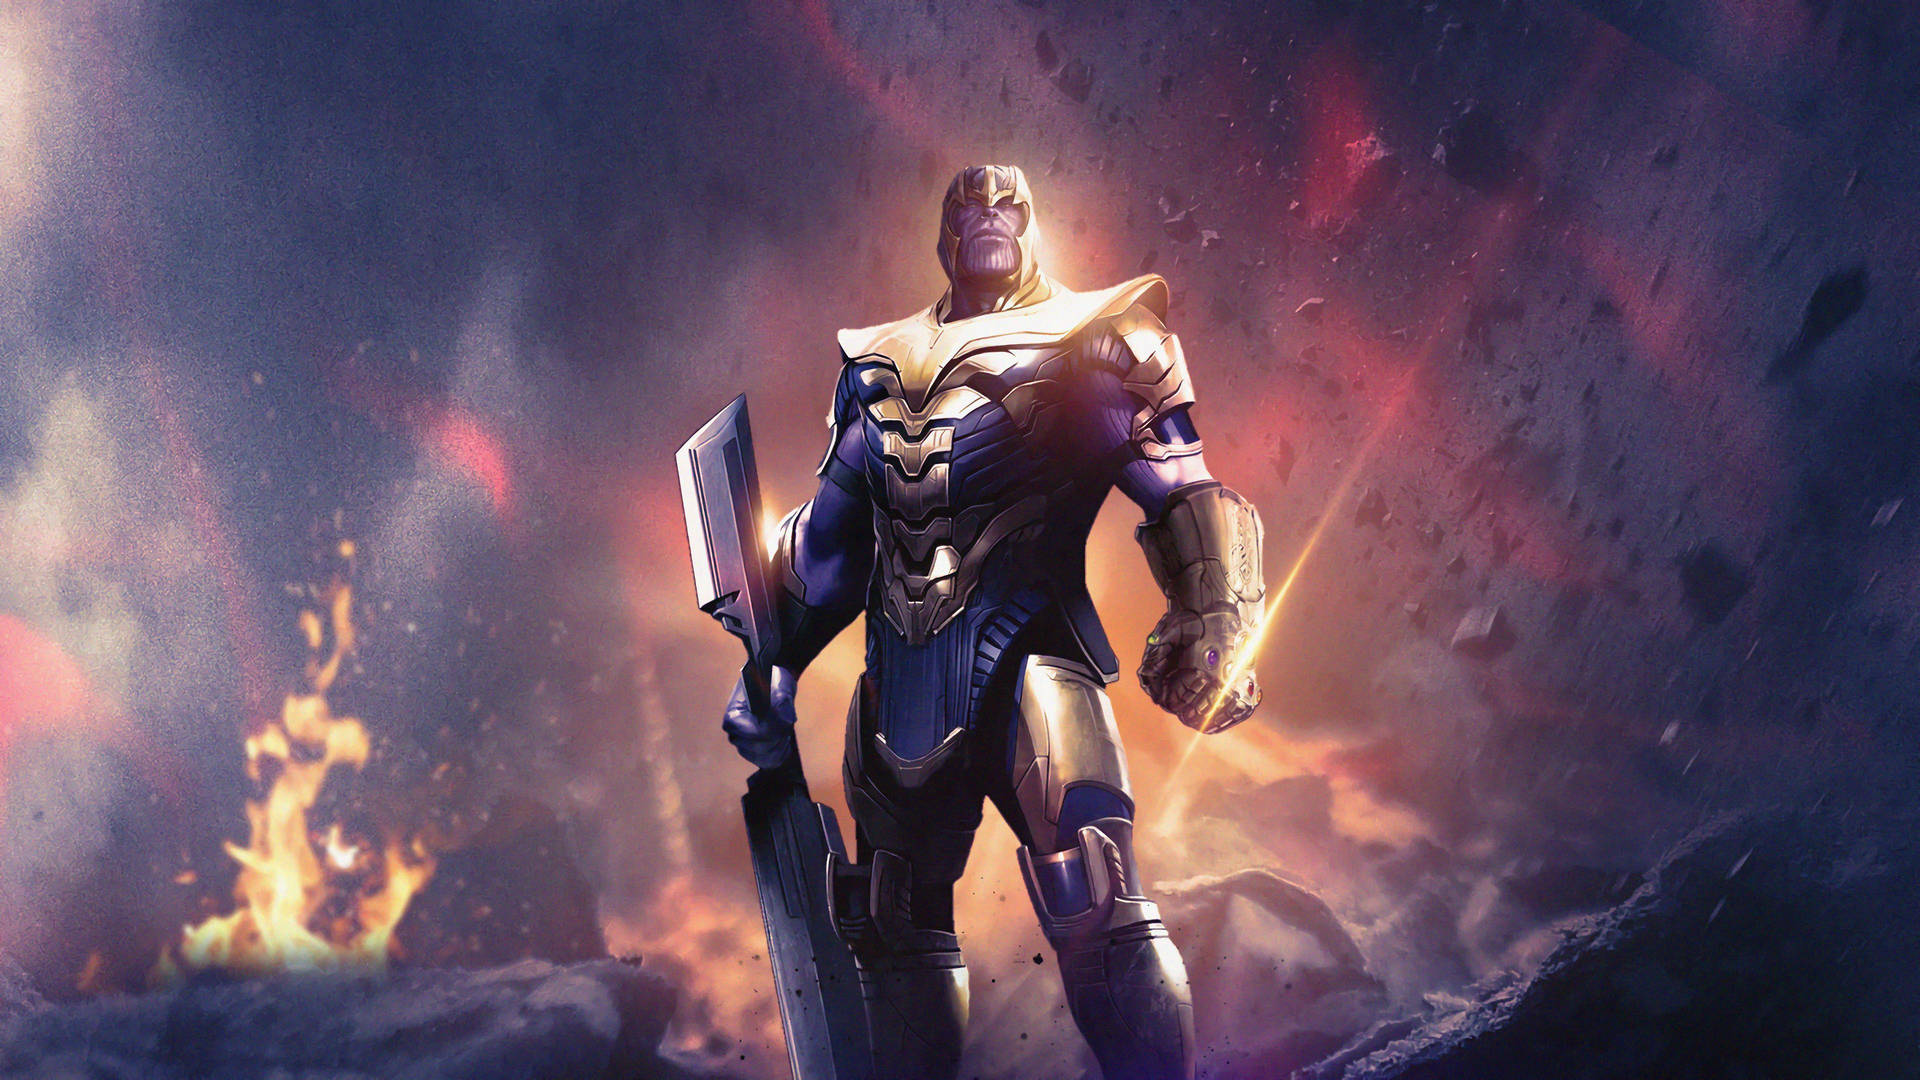 Papelde Parede Do Armored Thanos Em 4k Ultra Hd 2160p. Papel de Parede